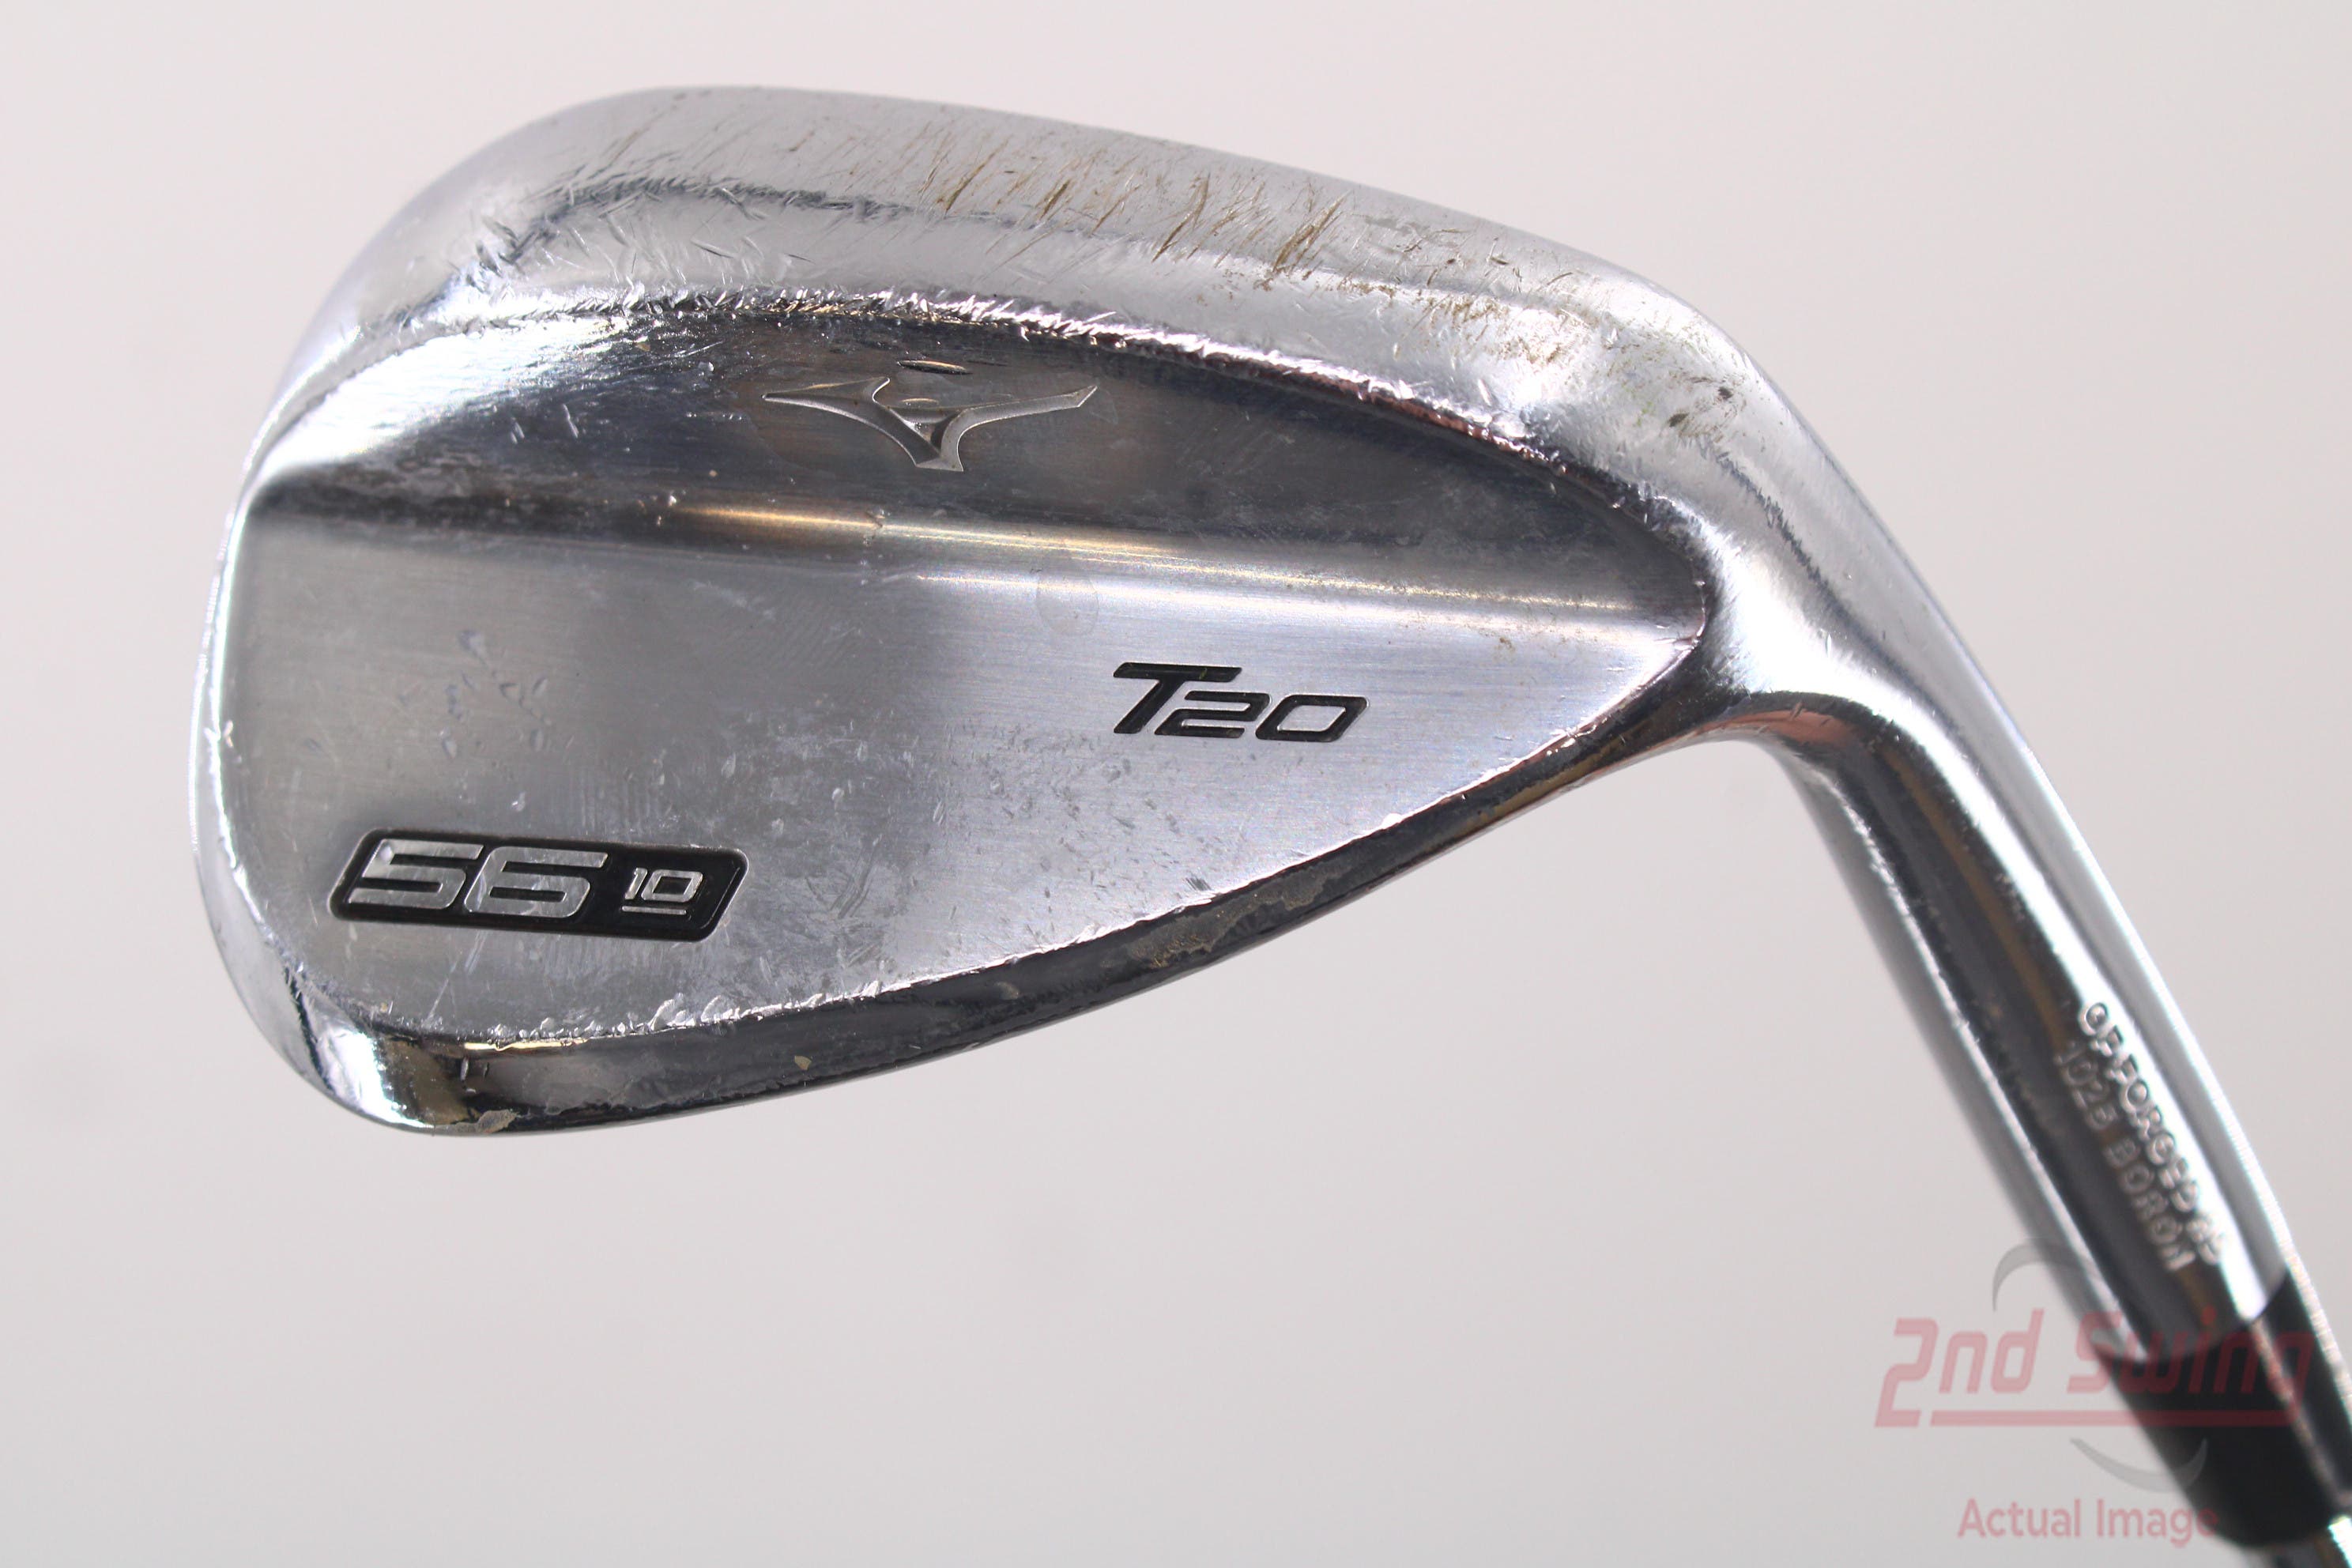 Mizuno T20 Satin Chrome Wedge | 2nd Swing Golf